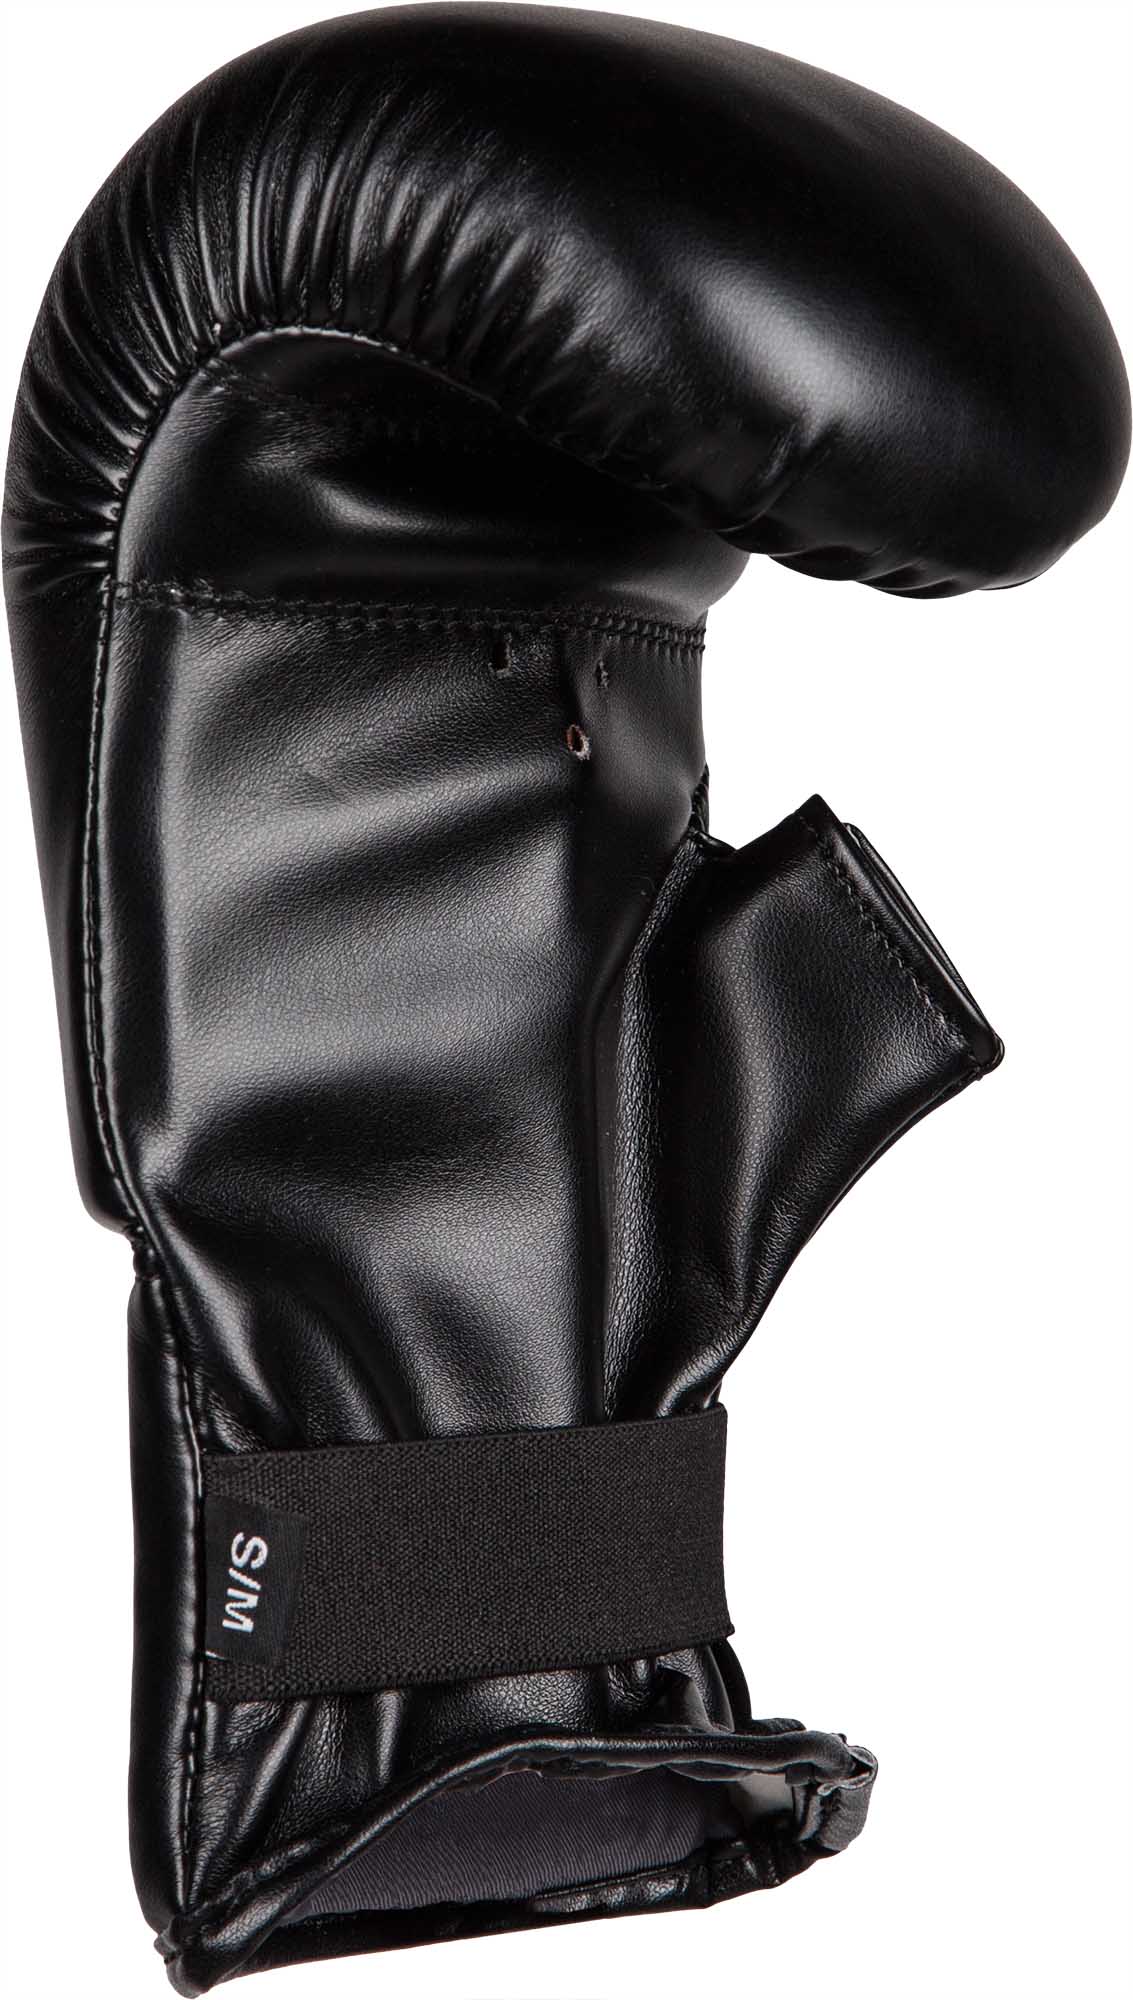 Punching bag gloves